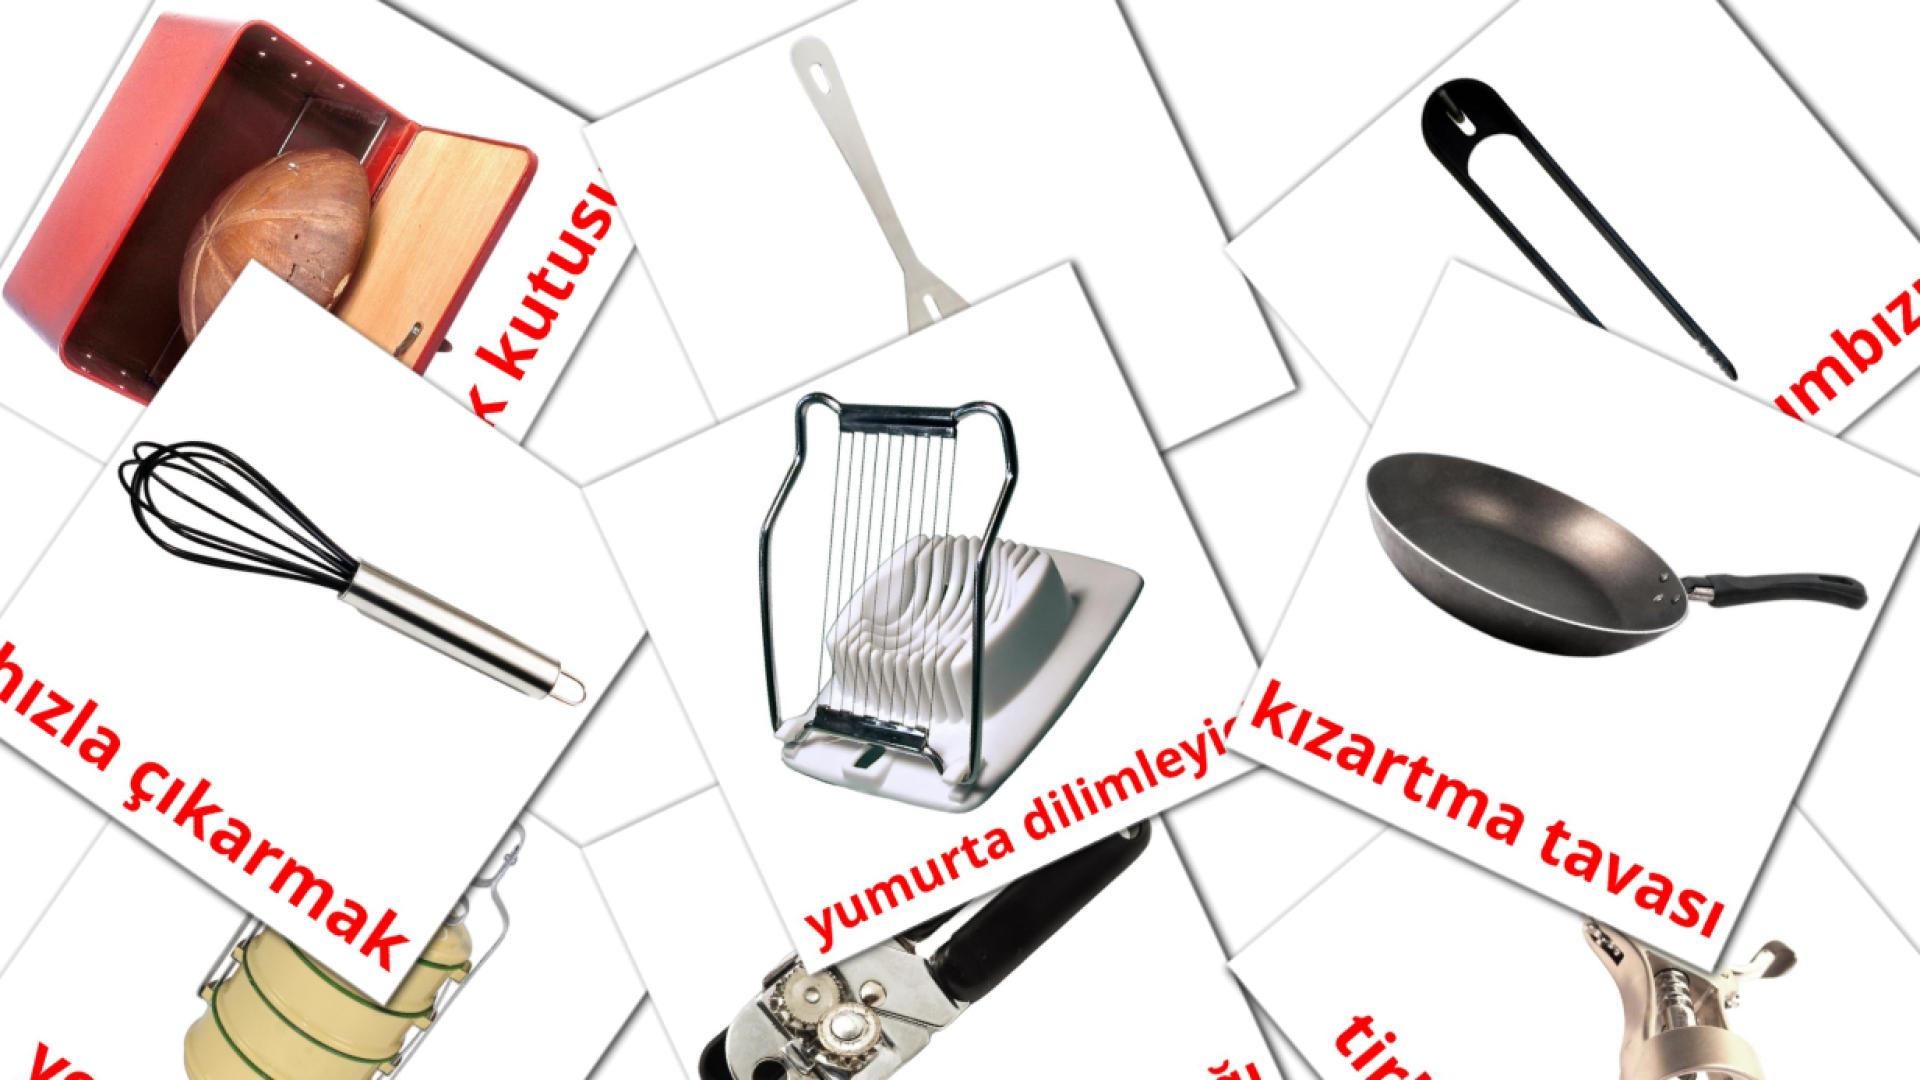 Kitchenware mutfak eşyaları  flashcards